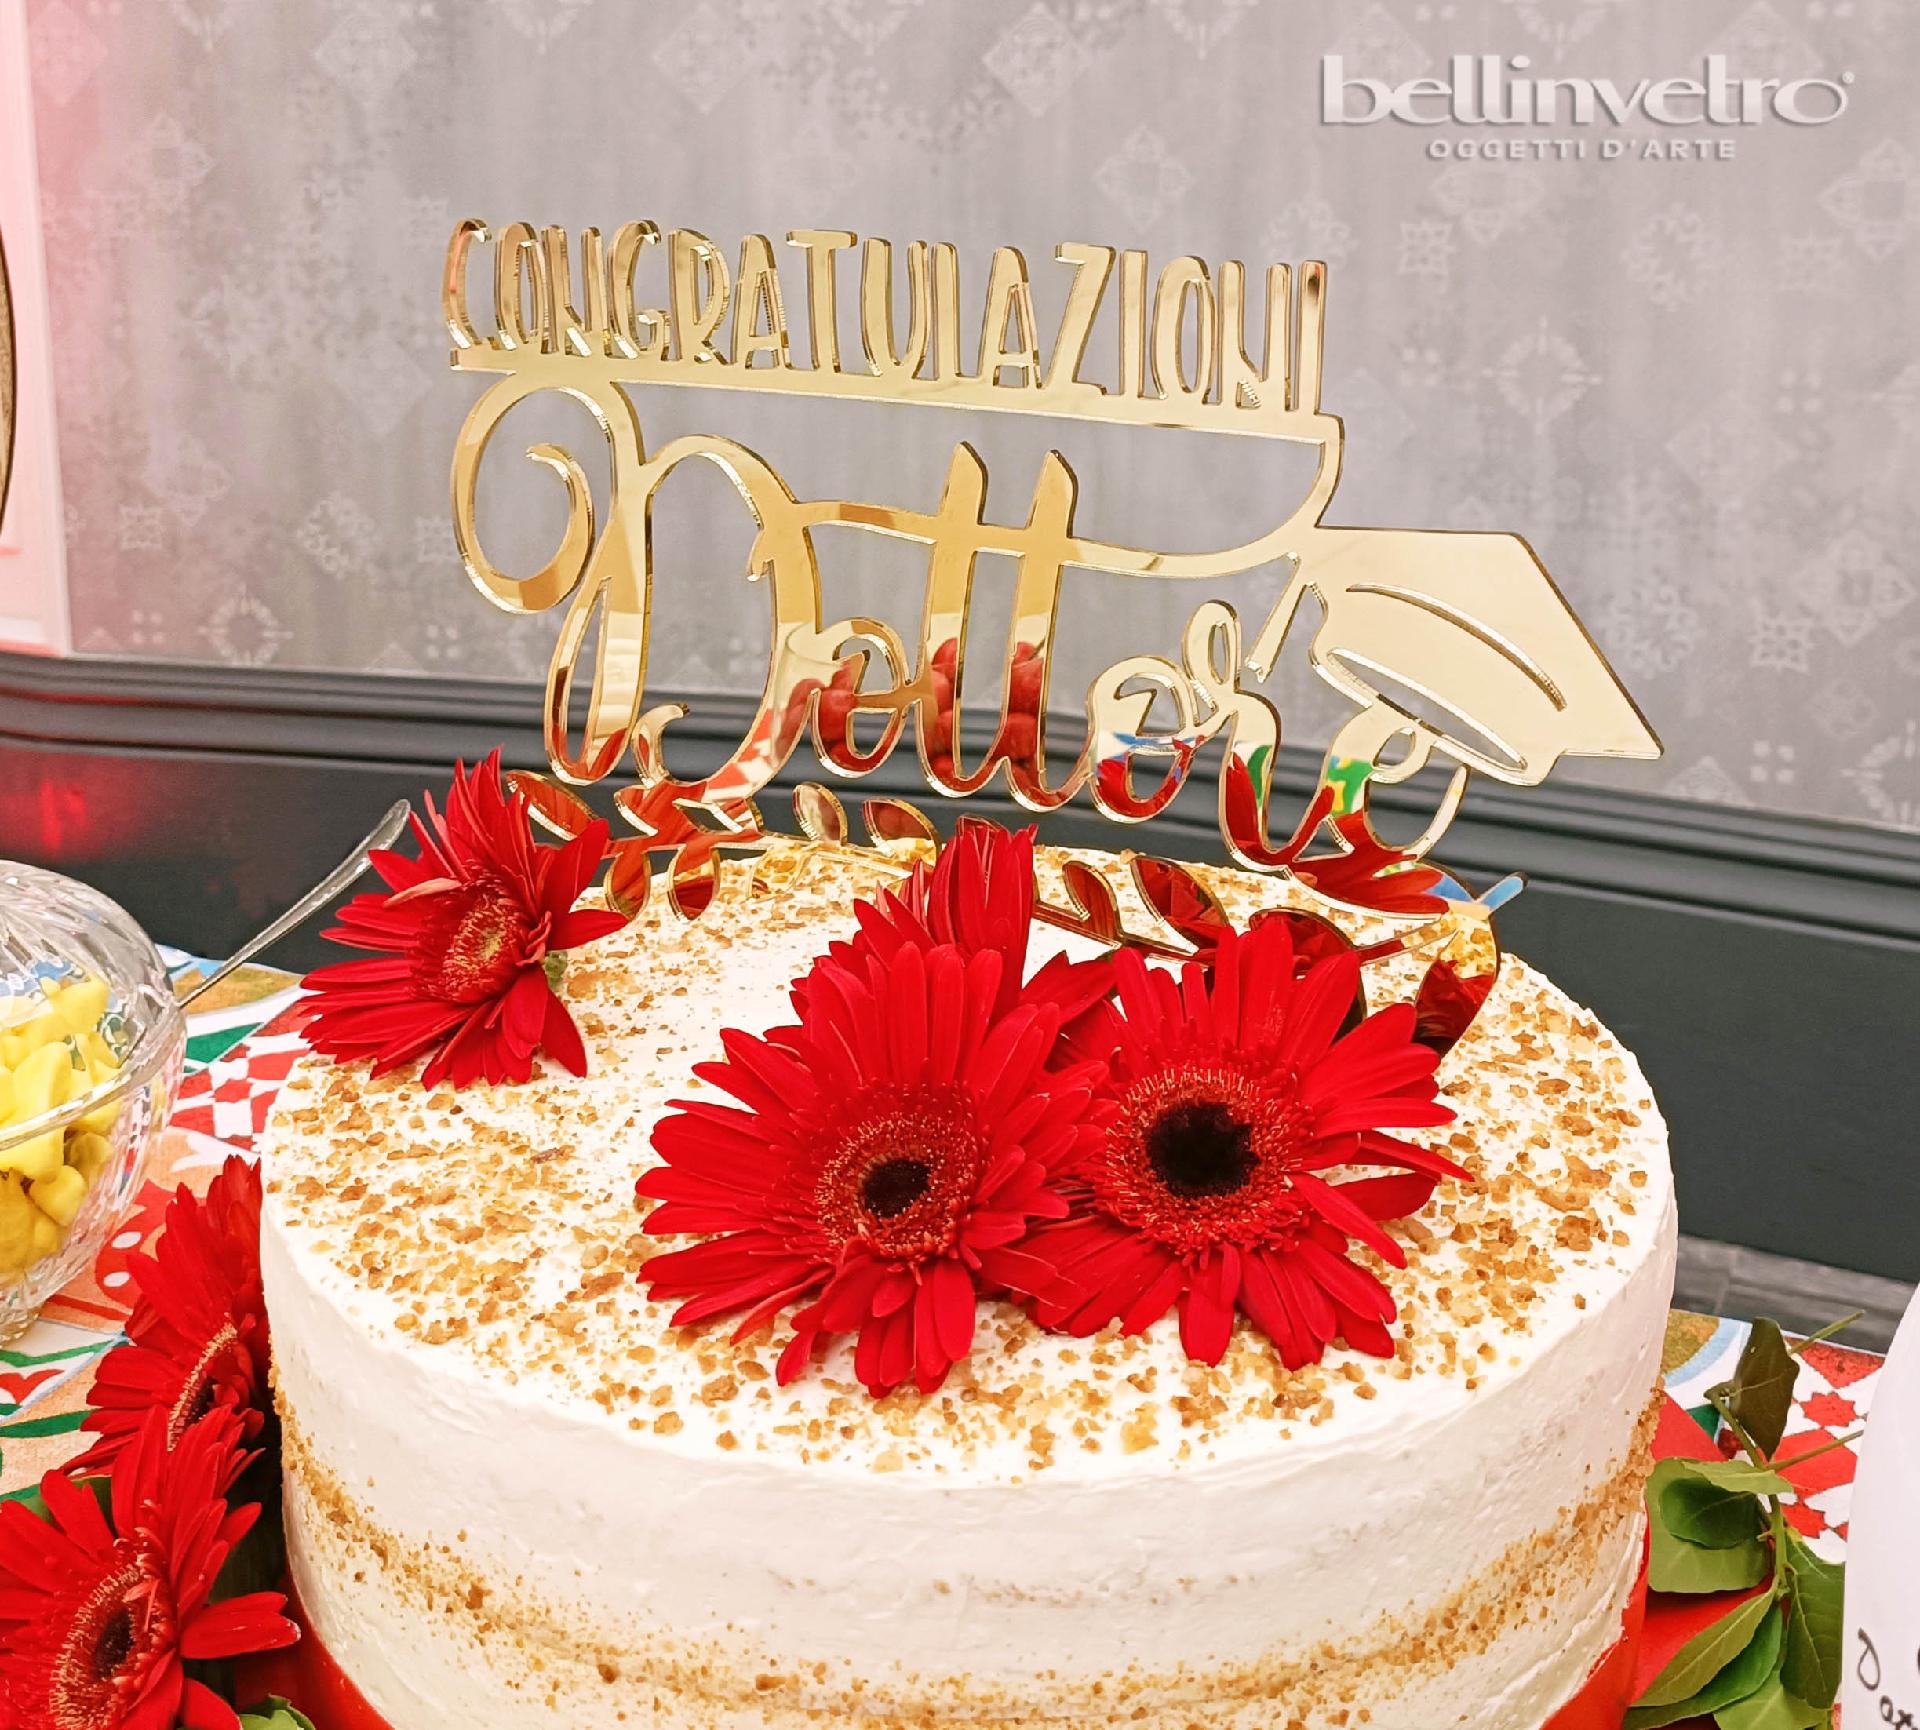 Topper cake congratulazioni dottore tocco in plexiglass specchiato  BELLINVETRO VR 265 - Corleone (Palermo)